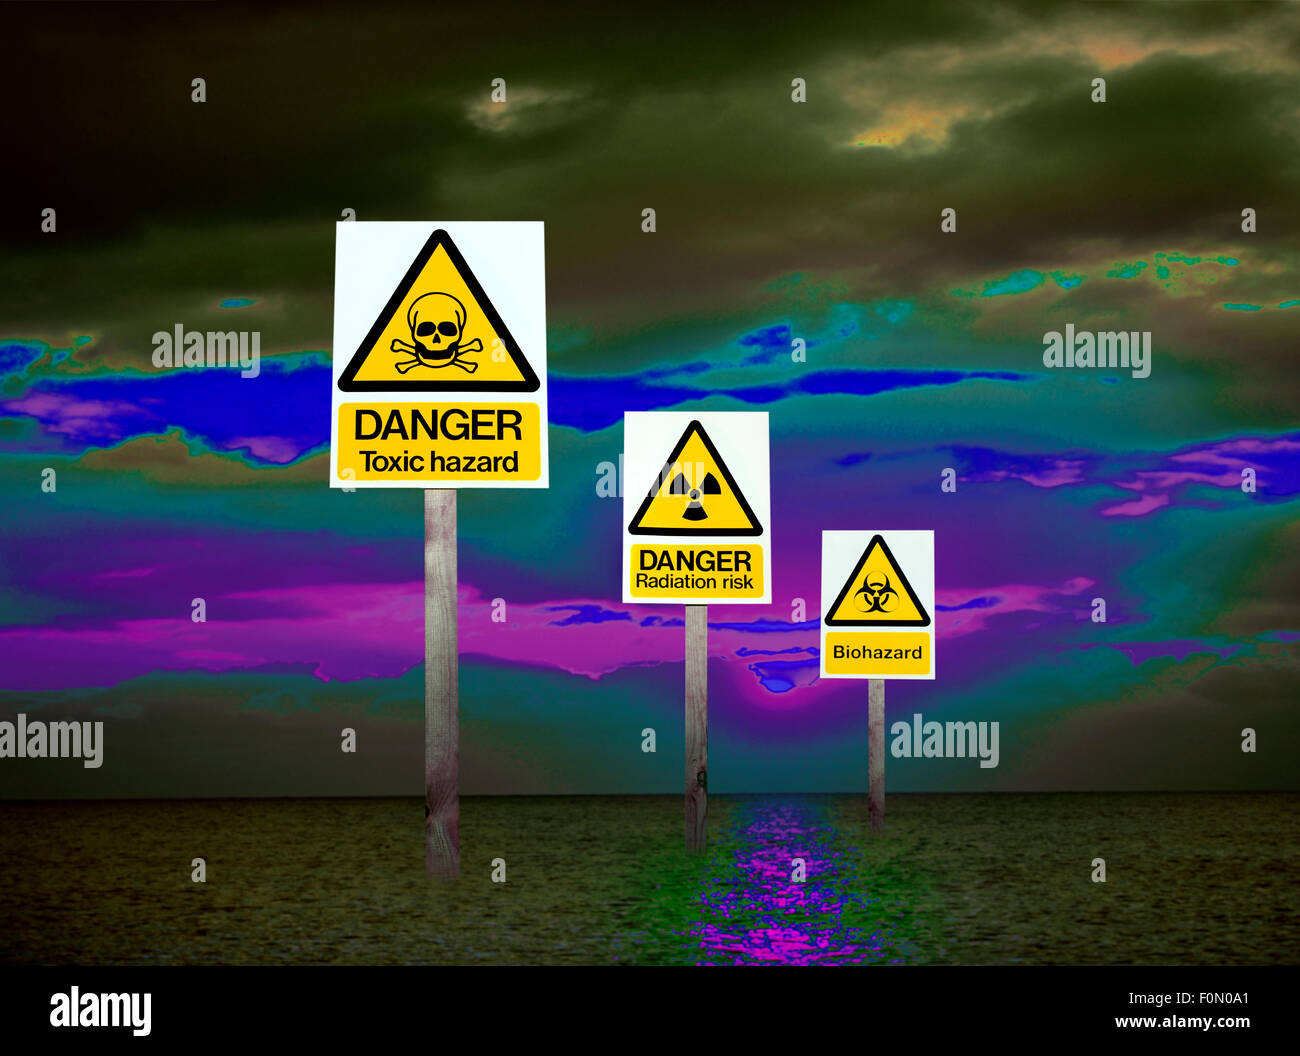 Drei Anzeichen von Gesundheitsgefahren und Umweltgefahren in einem digitalen Bild illustriert eine Welt der verschmutzte Luft und Meer. Stockfoto